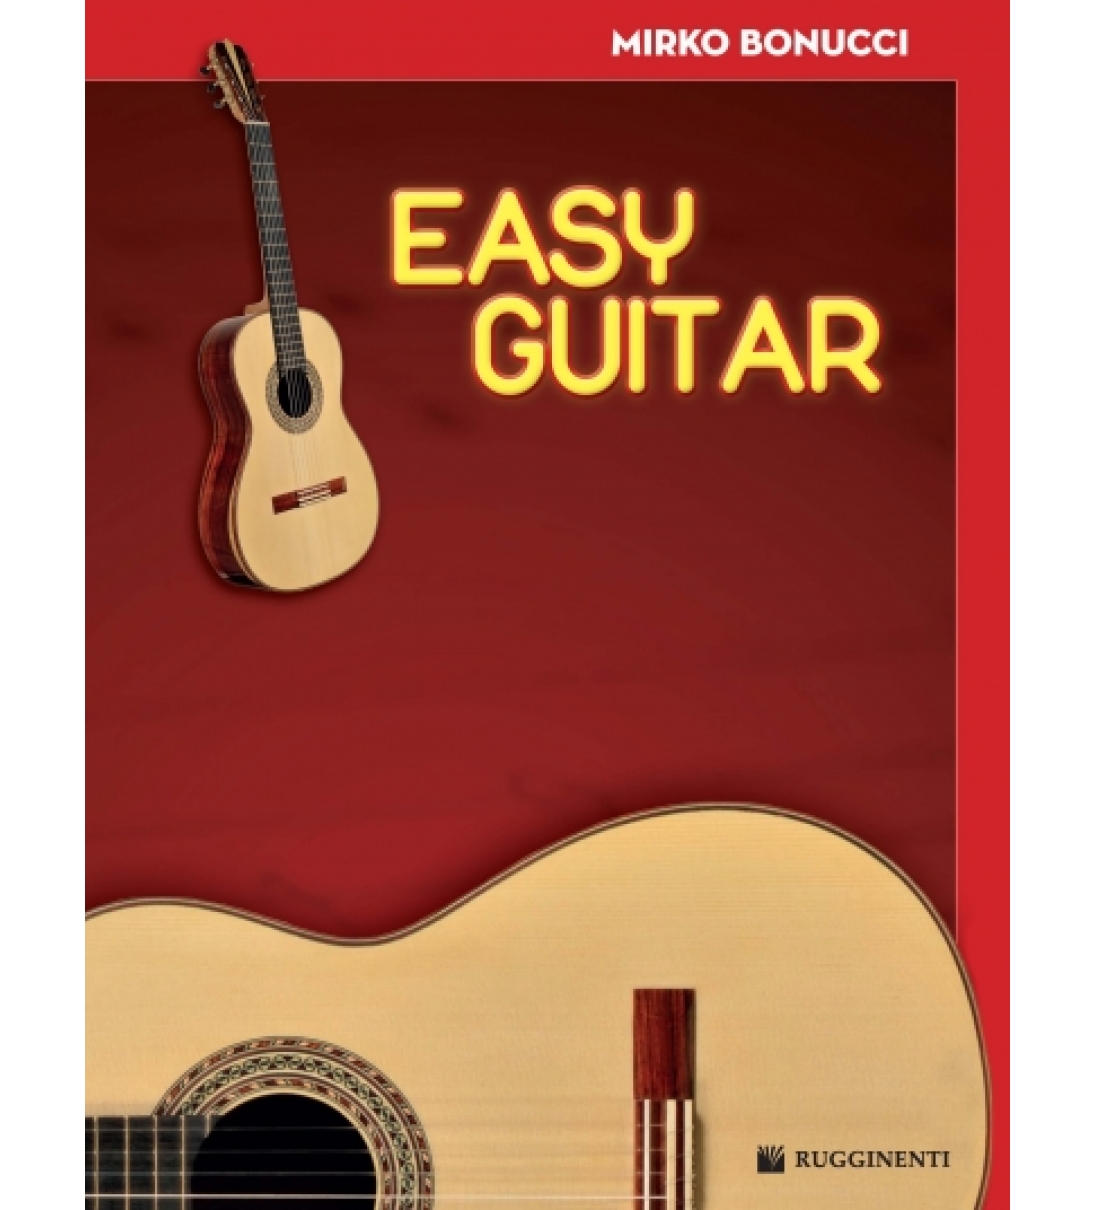 Easy Guitar - Nuovo Corso per Chitarra